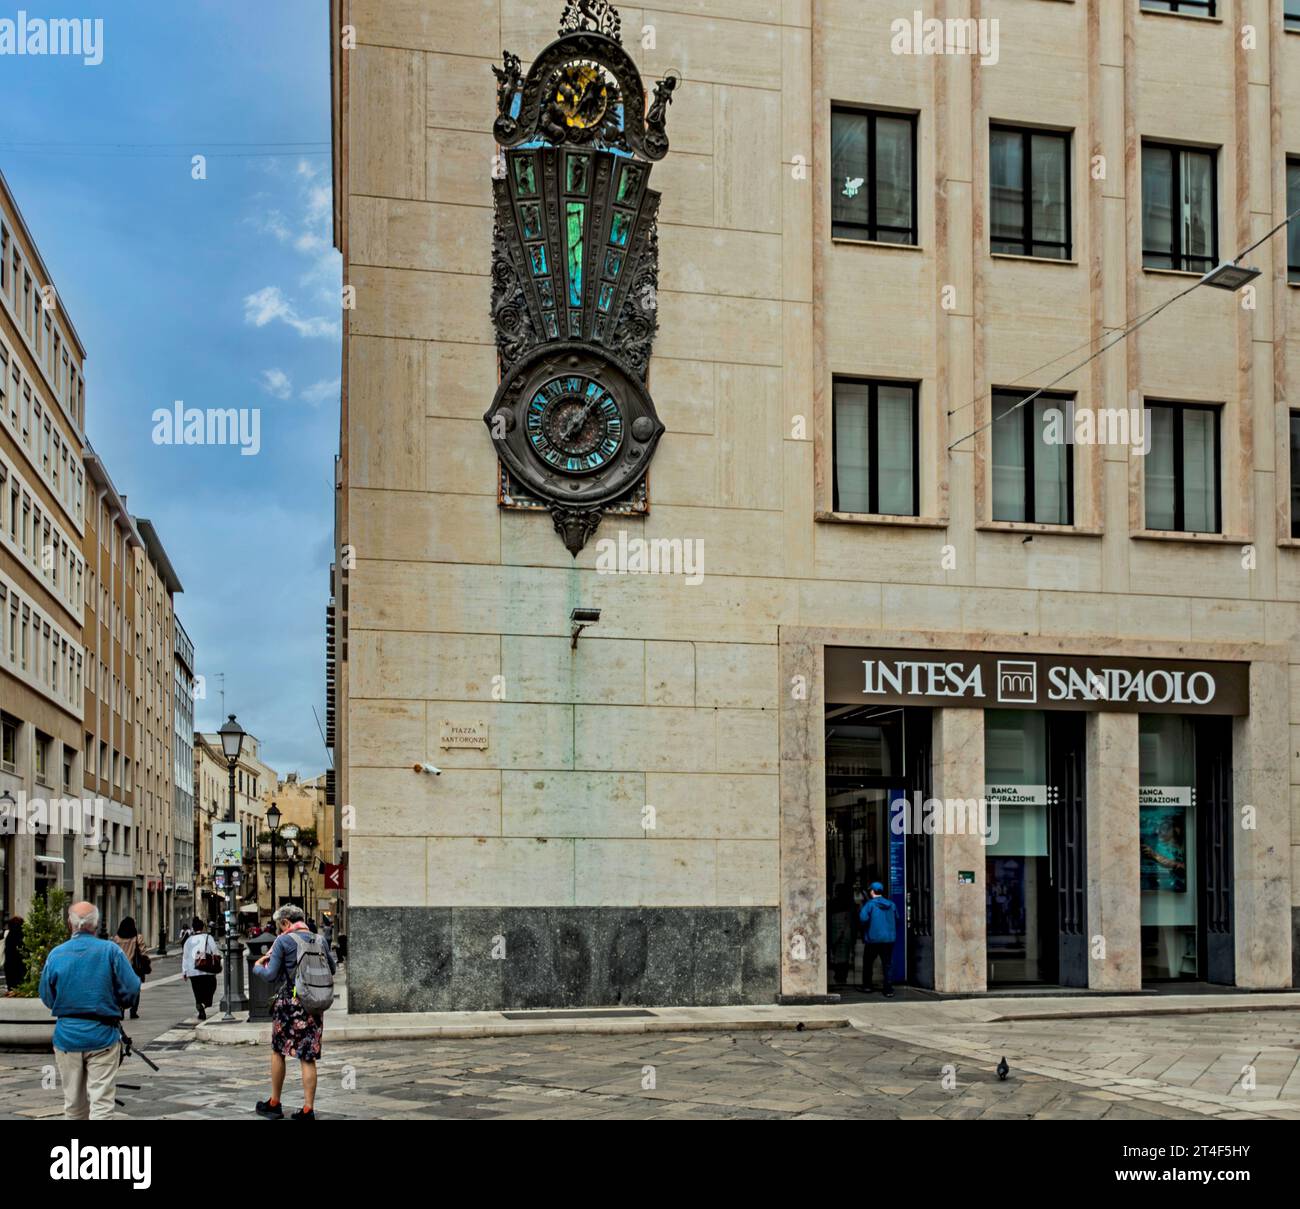 Filiale di intesa Sanpaolo a Lecce. Intesa Sanpaolo è la più grande banca d'Italia per patrimonio e la 27esima al mondo. Foto Stock